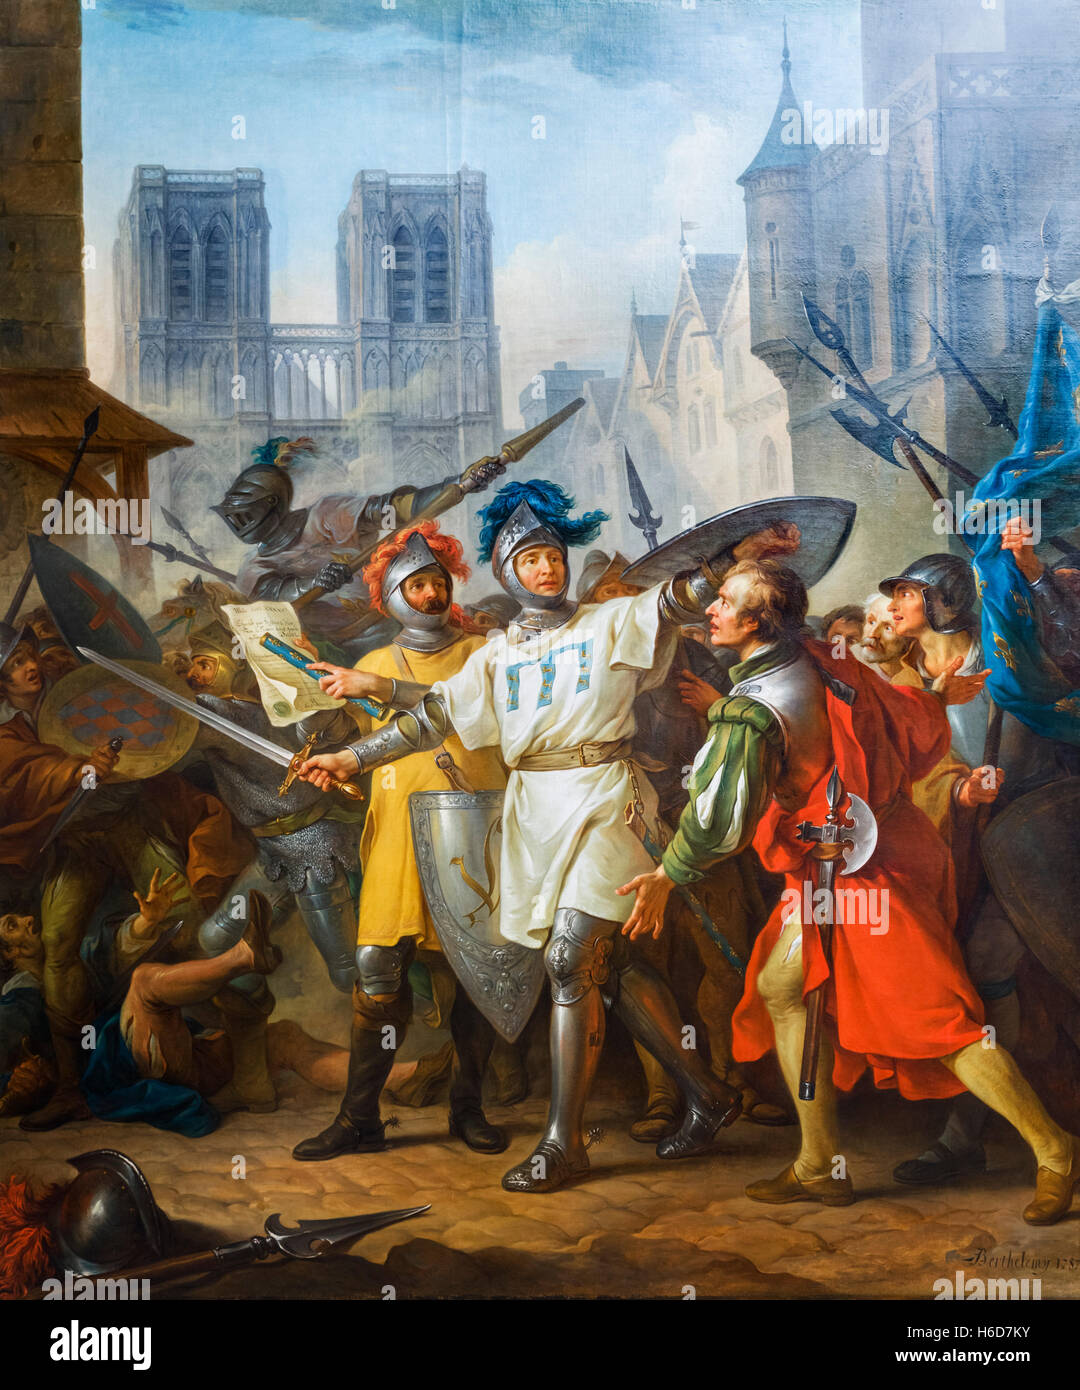 Die Rückeroberung von Paris aus dem englischen (La Reprise de Paris Sur Les Anglais) von Jean-Simon Berthelemy, Öl auf Leinwand, 1787. Während des Hundertjährigen Krieges besetzten die Engländer Paris von 1418 bis 1436. Dieses Gemälde, ein Auftragswerk der Comte d'Angivillier, zeigt die französische Armee, die Rückeroberung der Stadtzentrums am 13. April 1436. Stockfoto